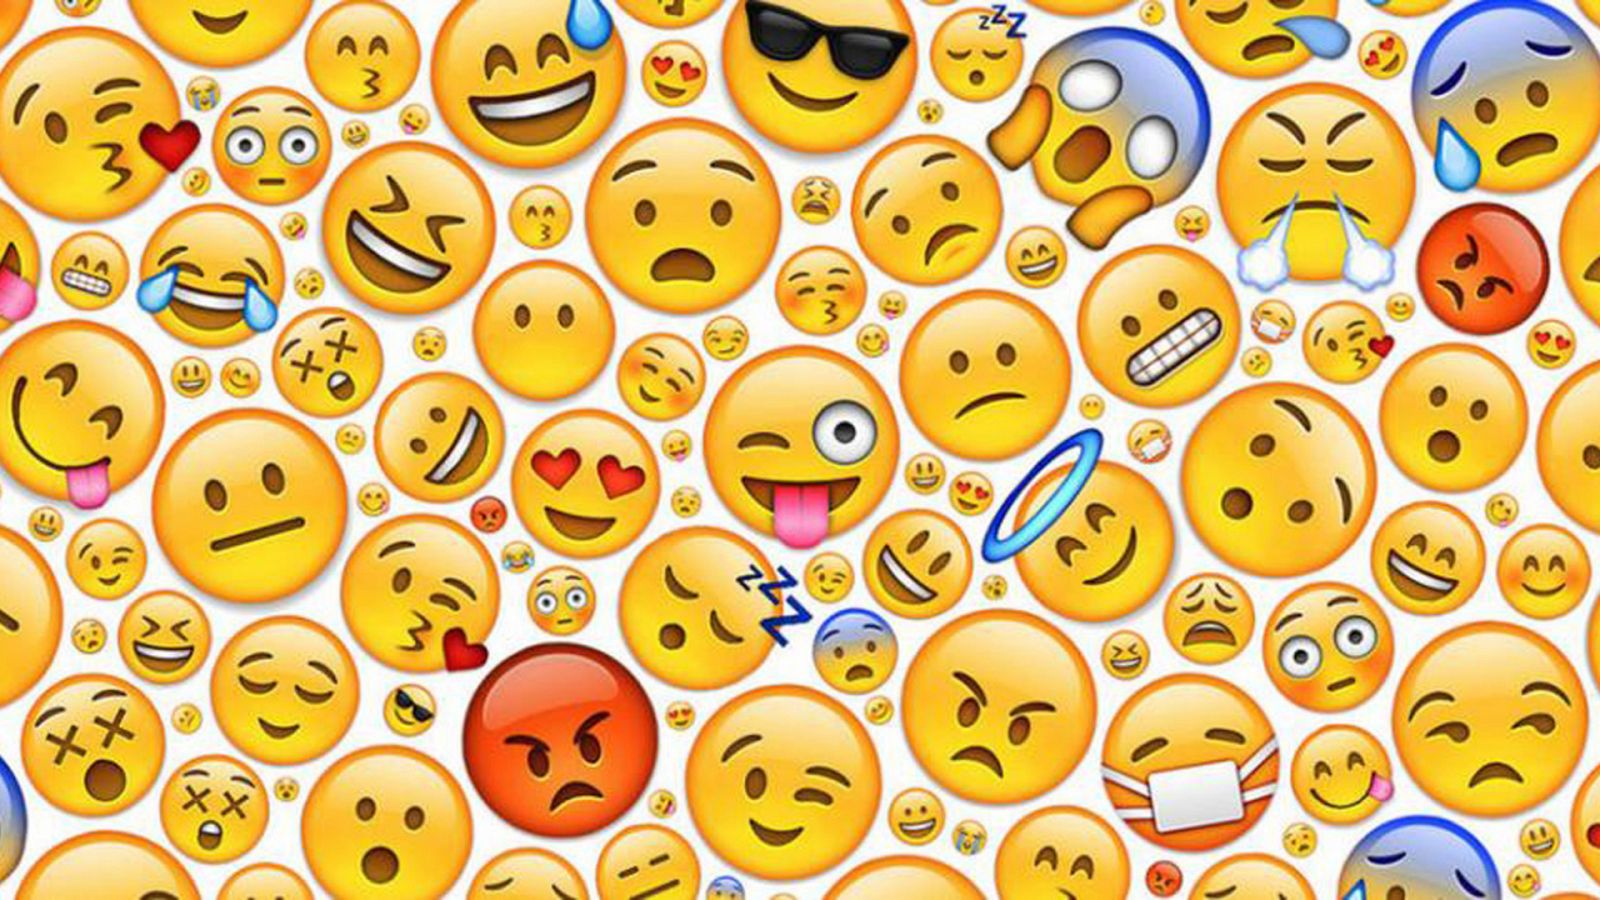 El estudio realizado por Emojipedia indica que cae el uso de emojis positivos en twitter